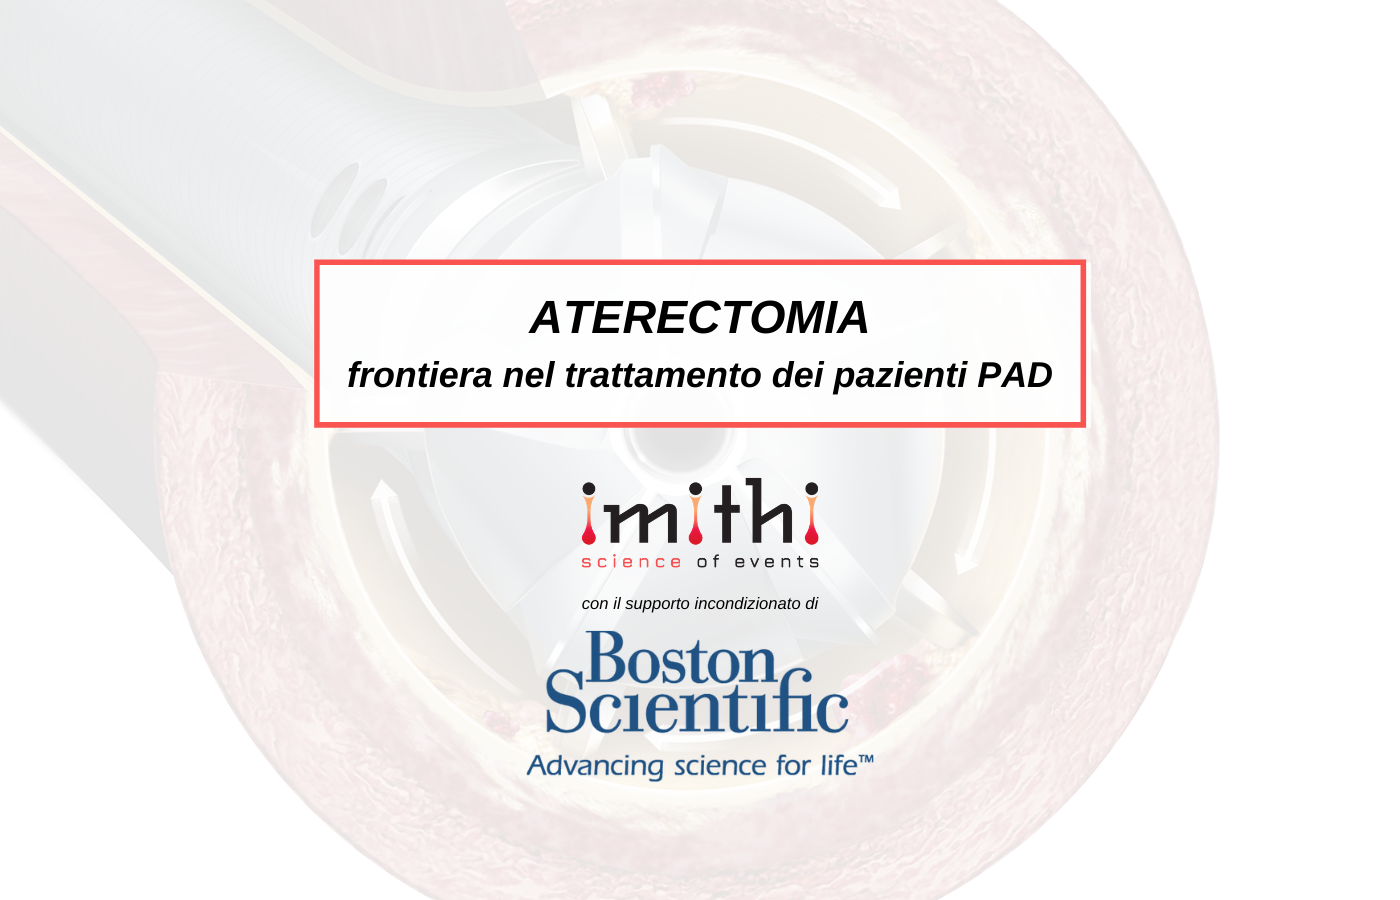 Aterectomia: frontiera nel trattamento dei pazienti PAD